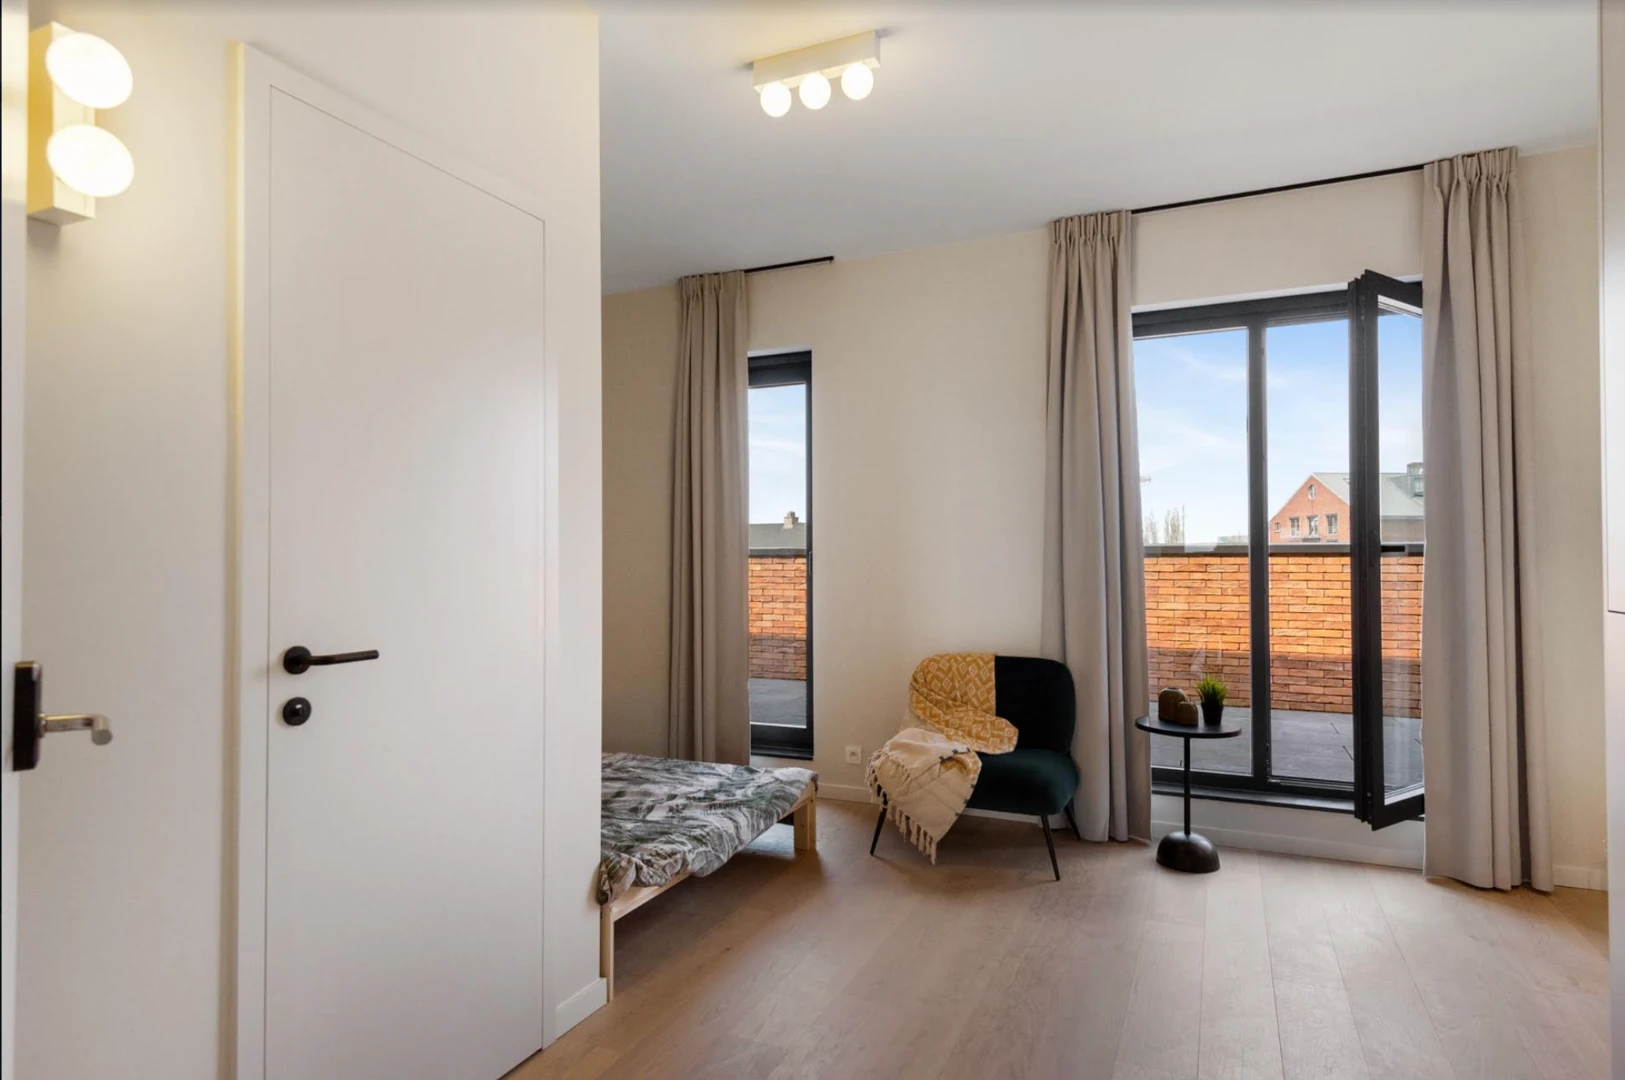 Quarto para alugar num apartamento partilhado em Antuérpia